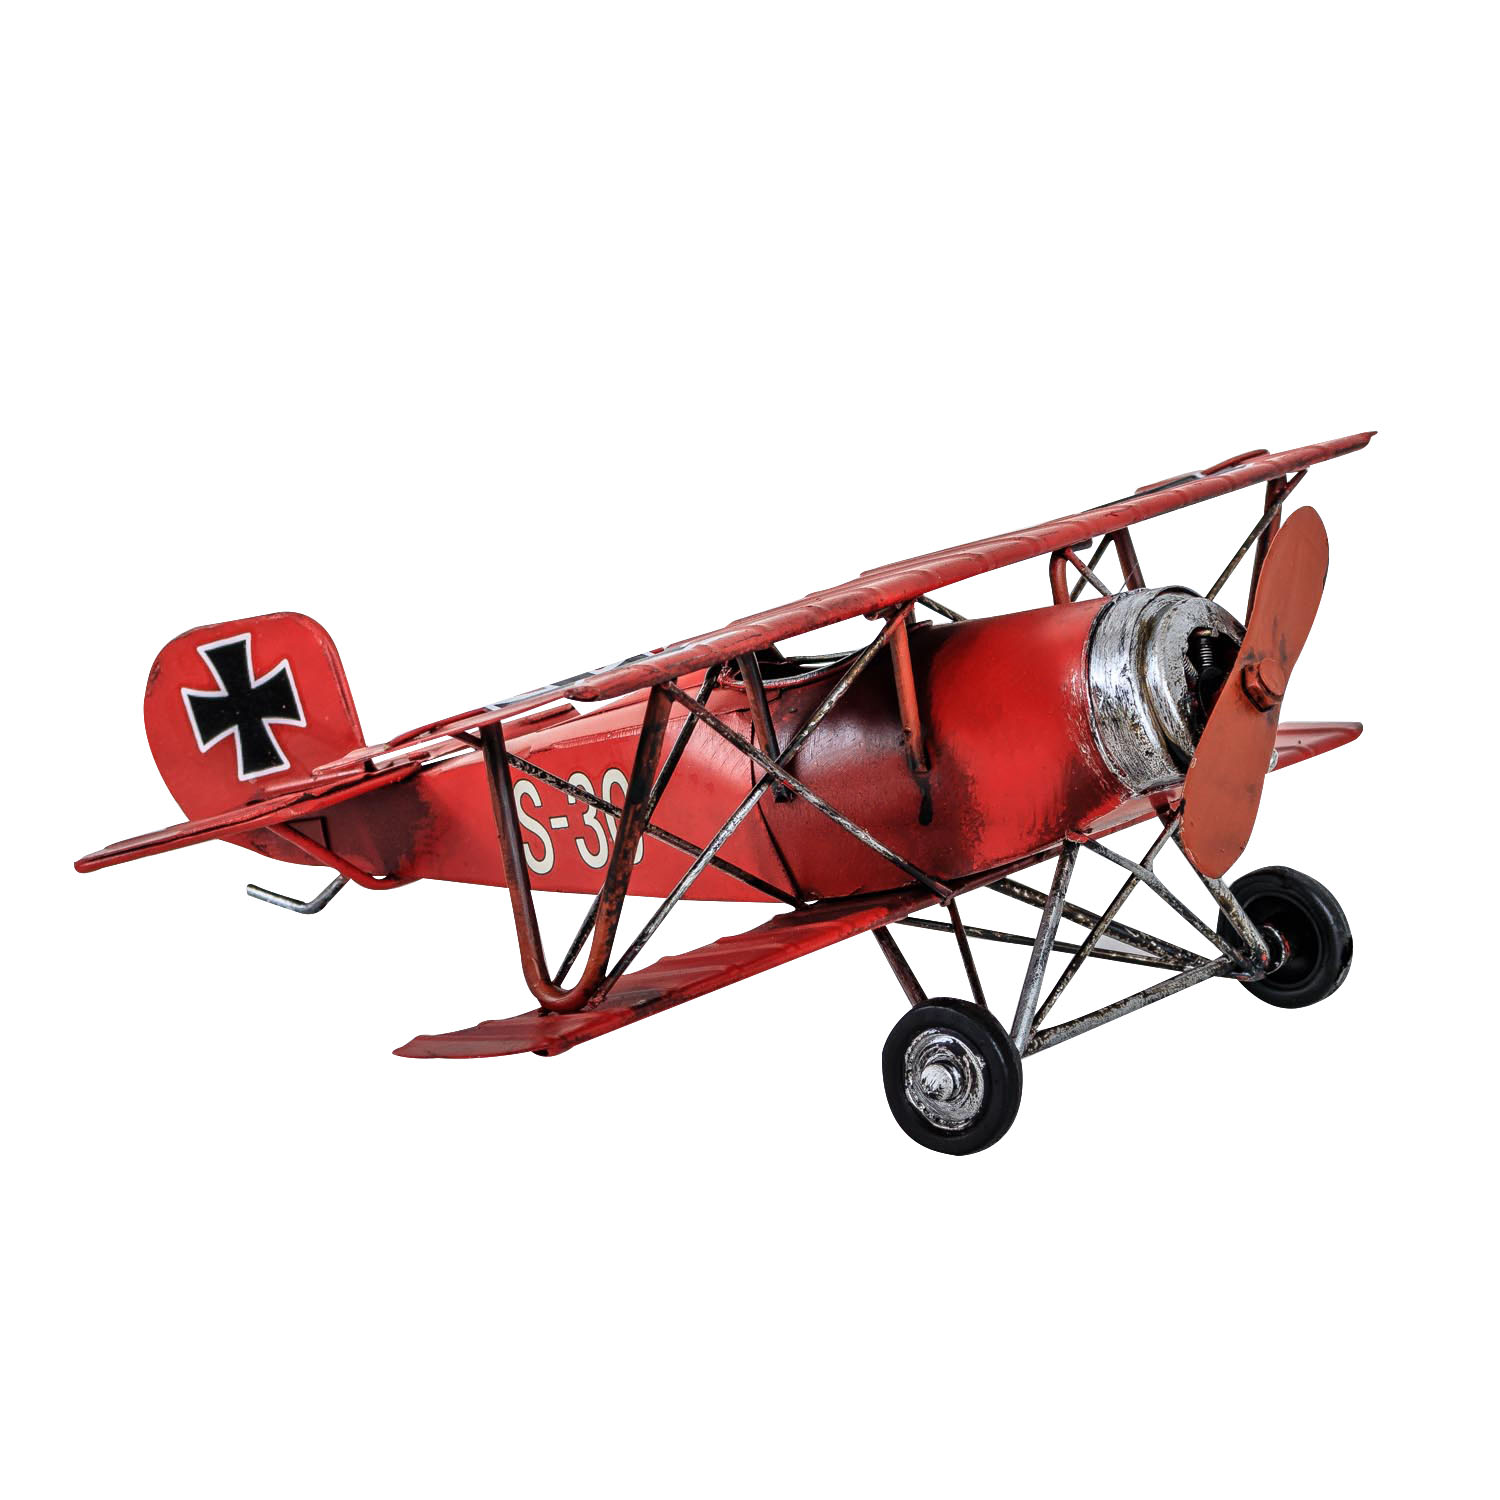 Flugzeug Doppeldecker roter Baron nostalgische Dekoration Blechflugzeug 